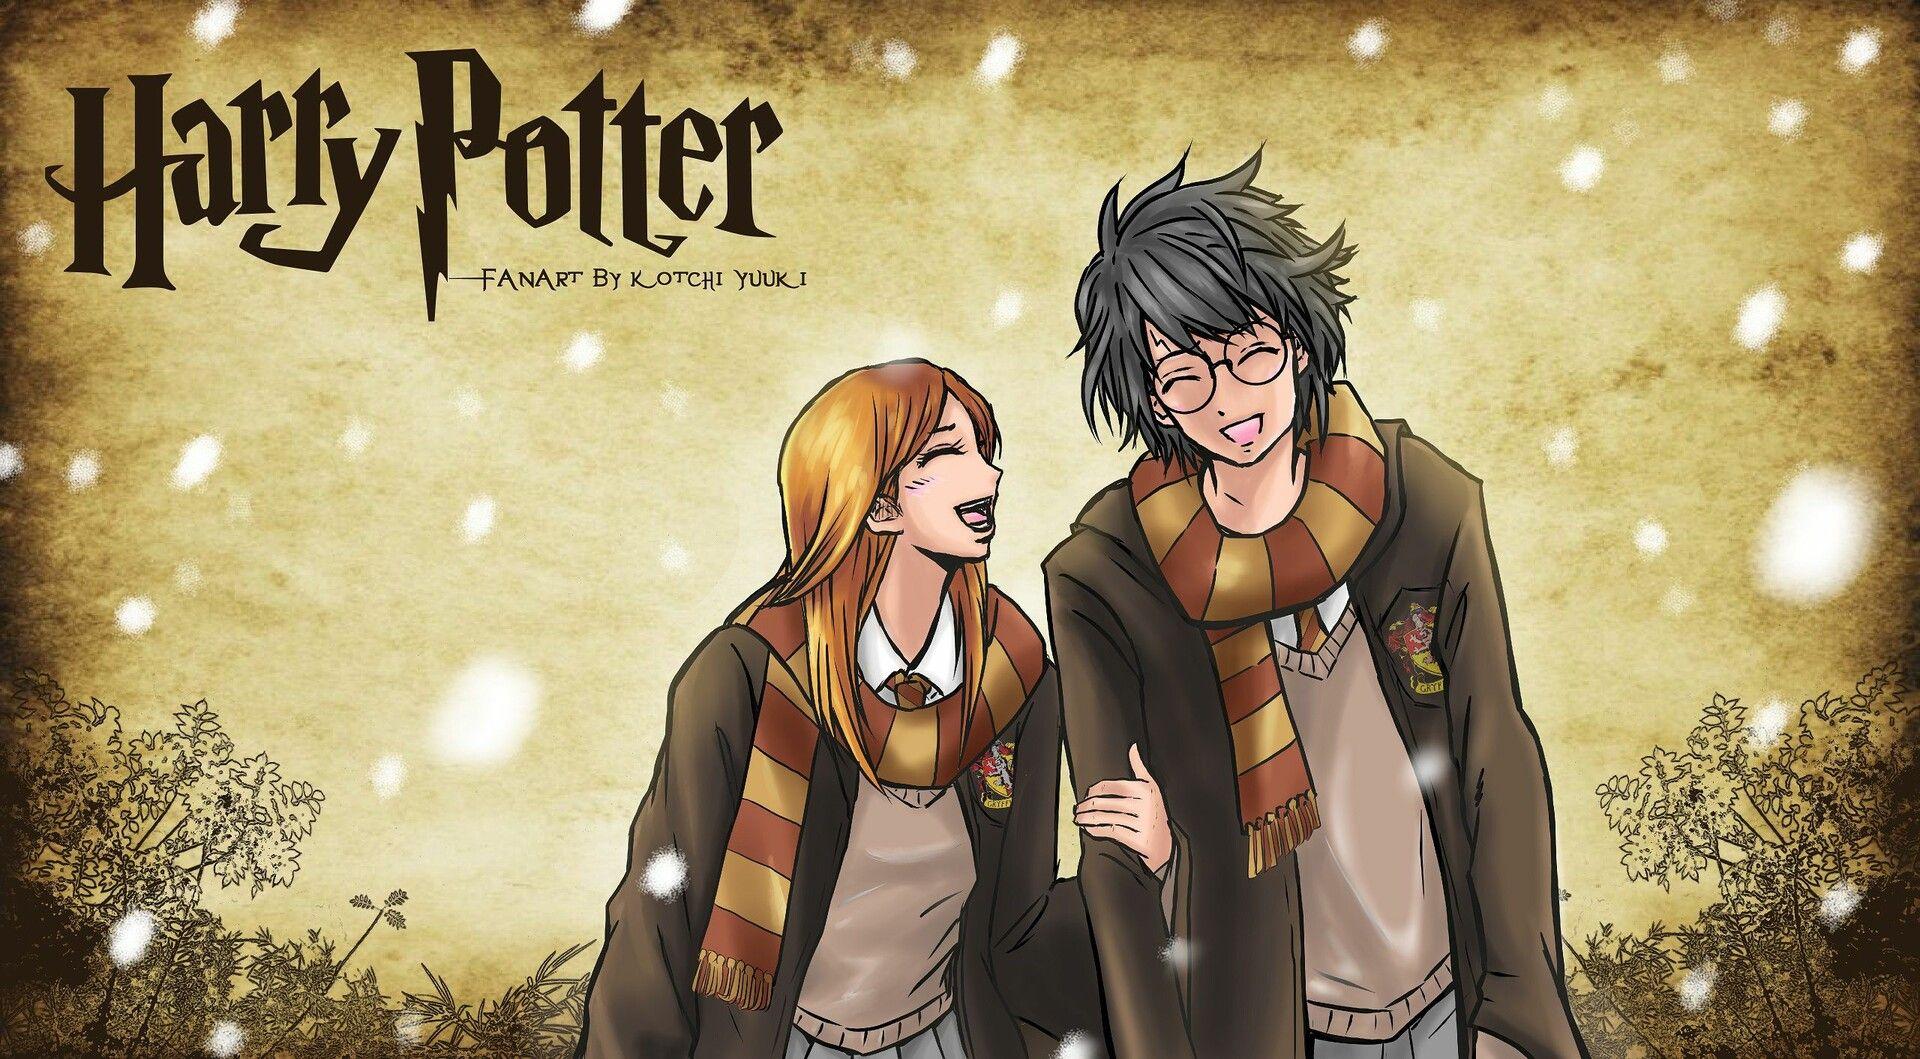 Harry Potter Anime Wallpapers kết hợp giữa phong cách truyền thống của ảnh Harry Potter và sự tươi trẻ, thần thái của phong cách anime, cho ra những bức hình nền lôi cuốn, hấp dẫn. Với các nhân vật quen thuộc trong Anime được lồng vào thế giới phép thuật, bạn sẽ cảm thấy được sự mới lạ của Harry Potter.